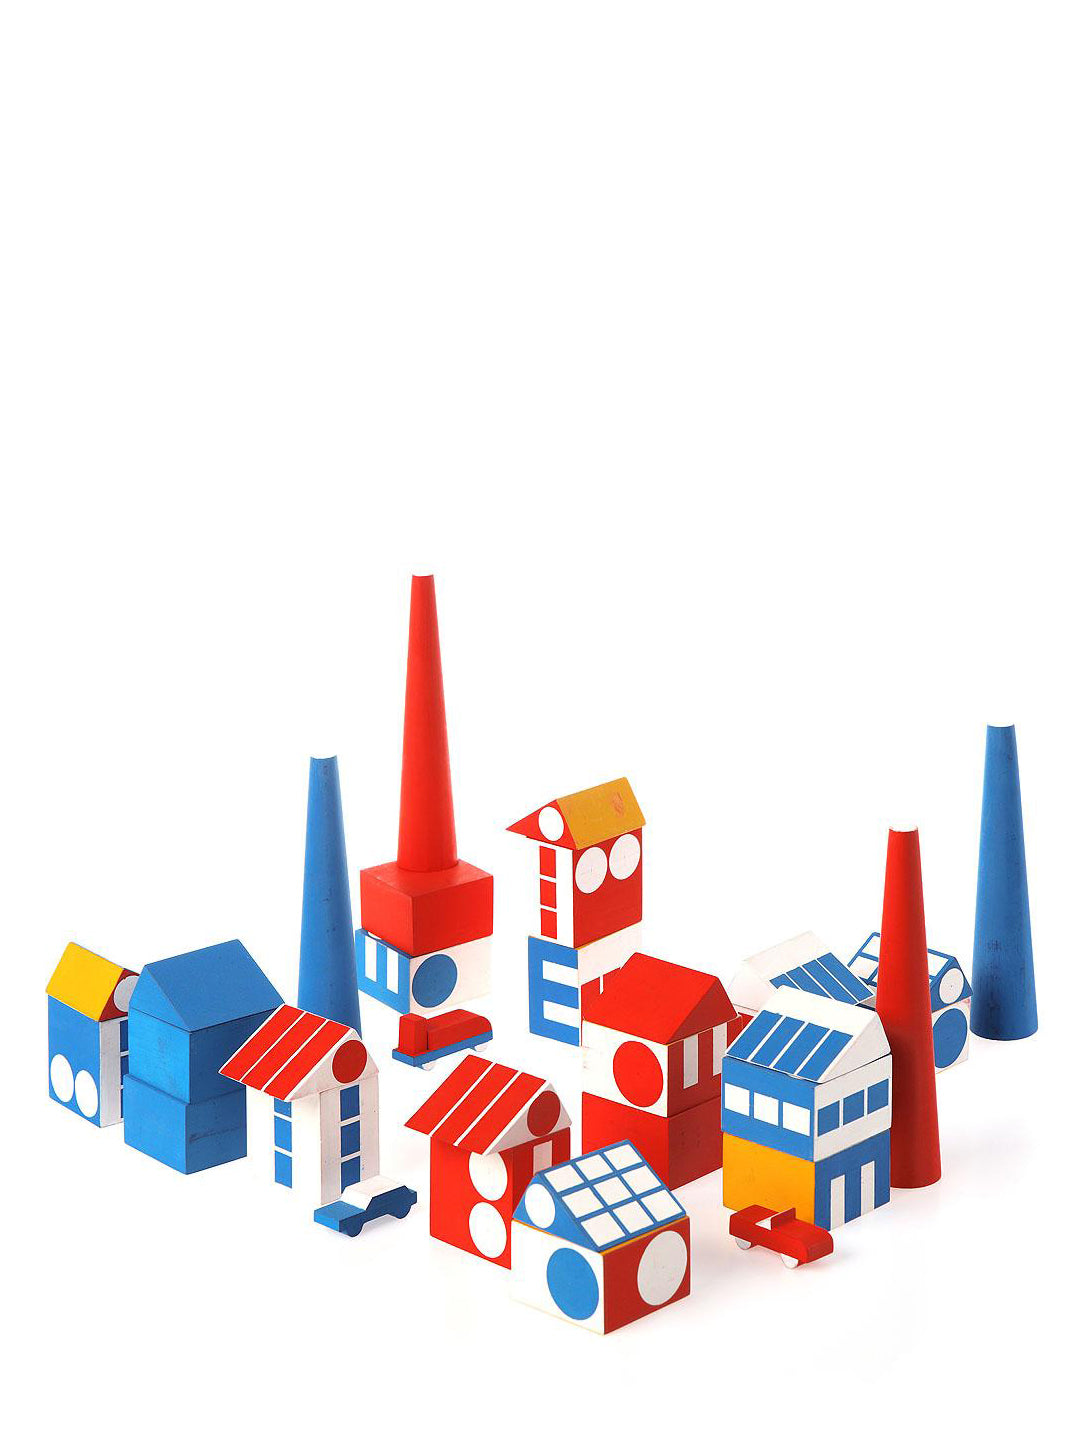 Factory Town building blocks set by Ladislav Suttnar